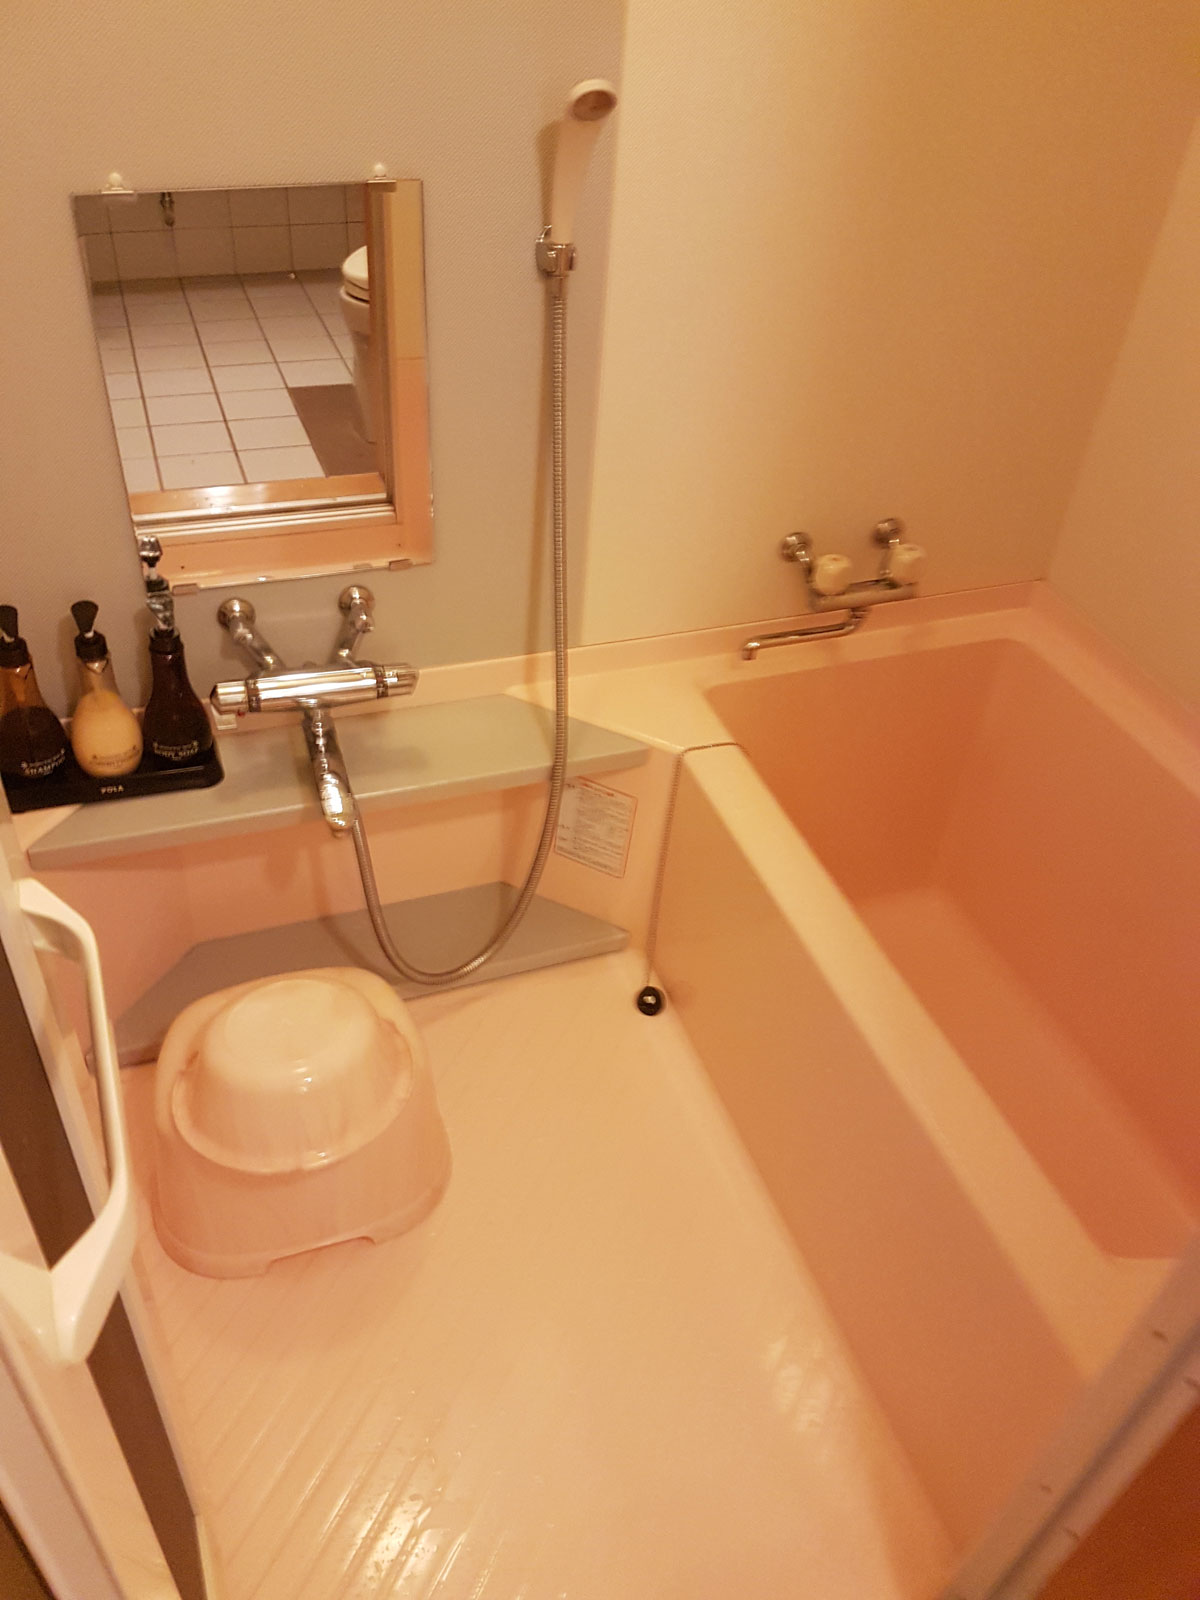 Dusche Im Badezimmer Im Japanischen Style, Sie Werfen Sich In Schale